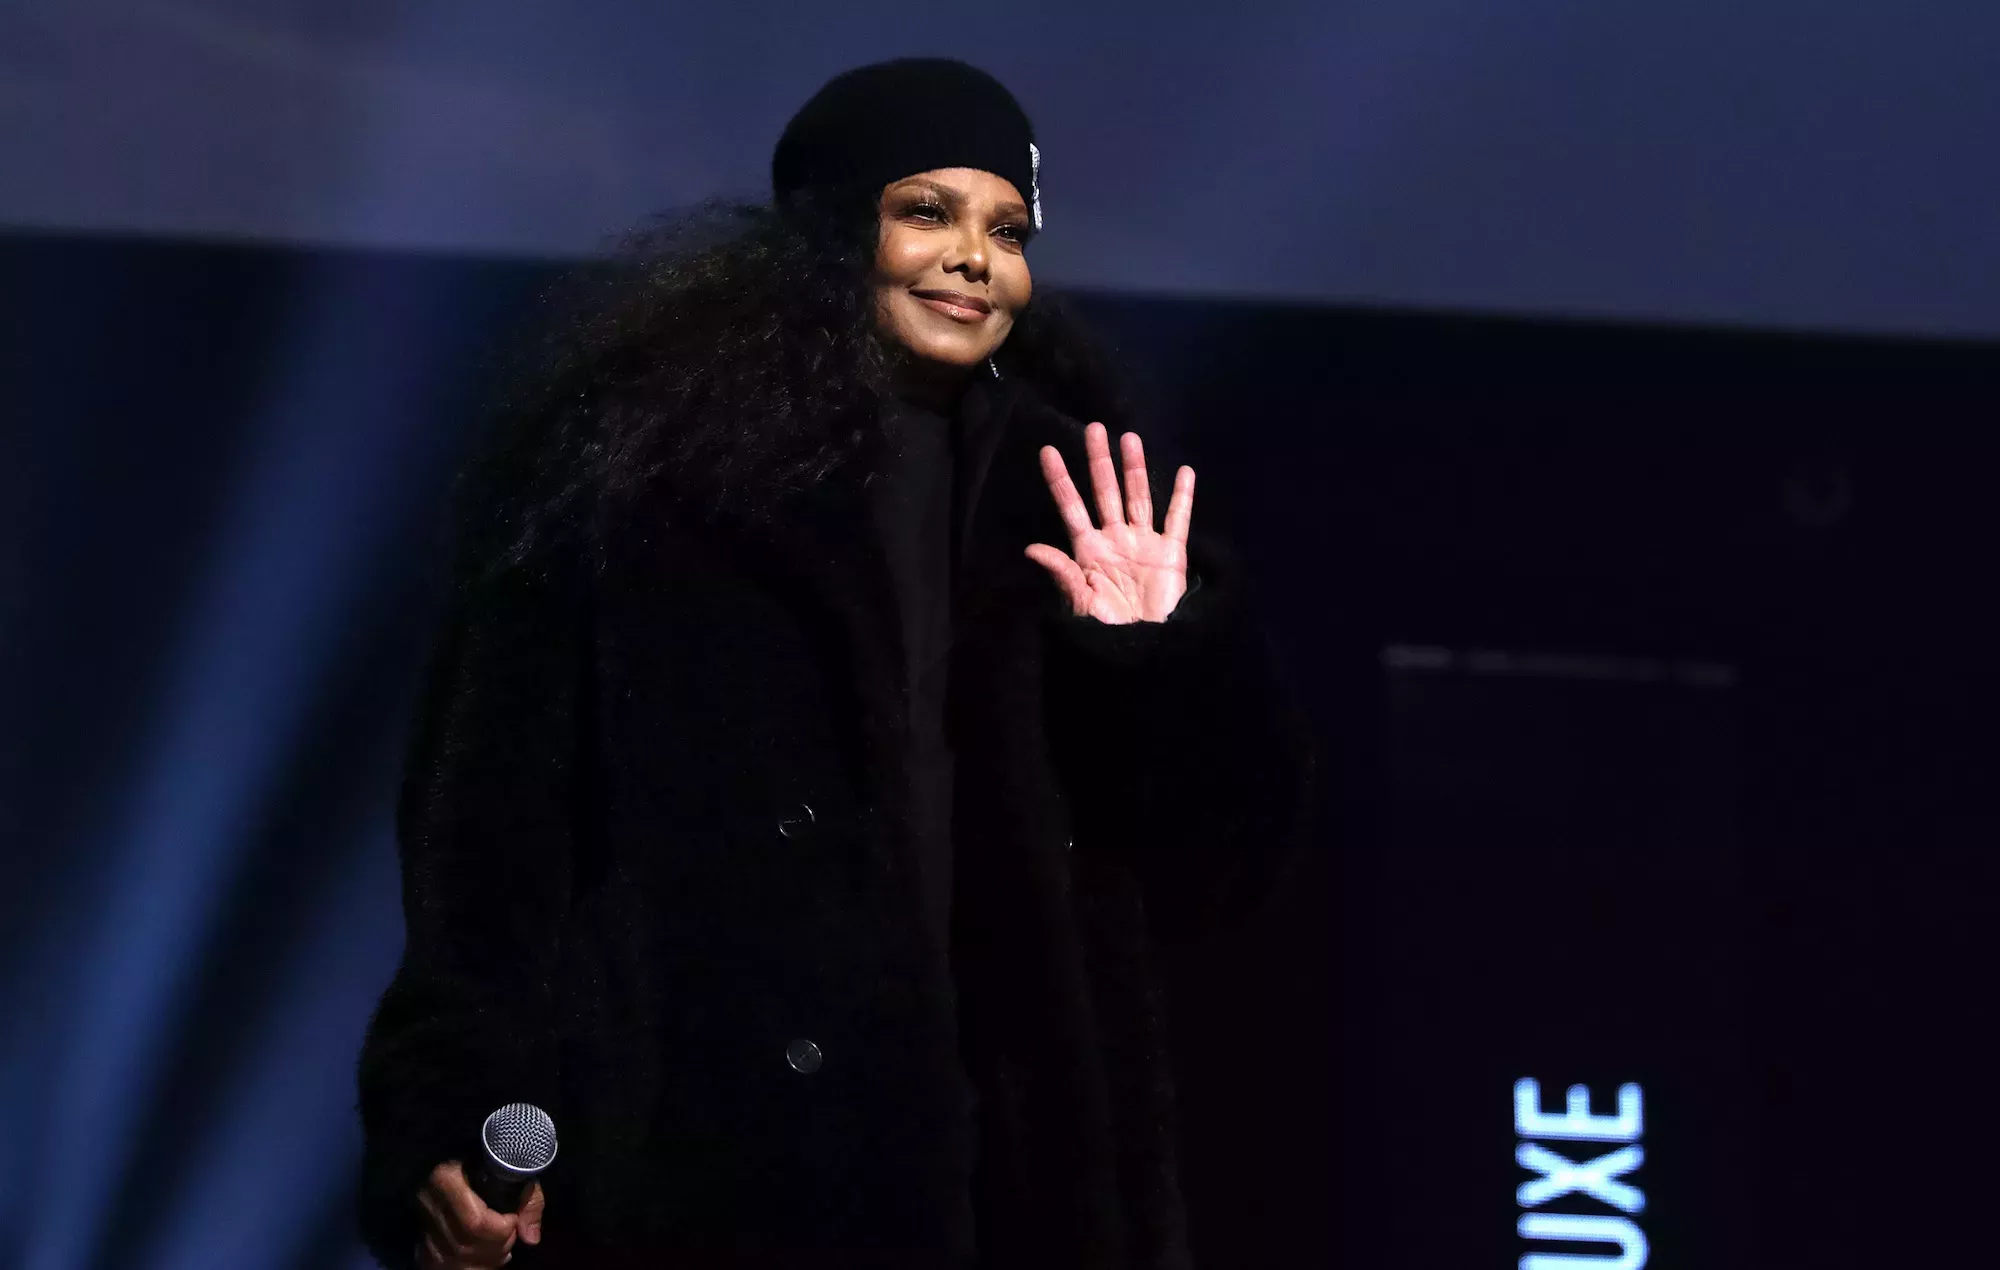 El single 'Rhythm Nation' de Janet Jackson hace que los viejos ordenadores portátiles se colapsen